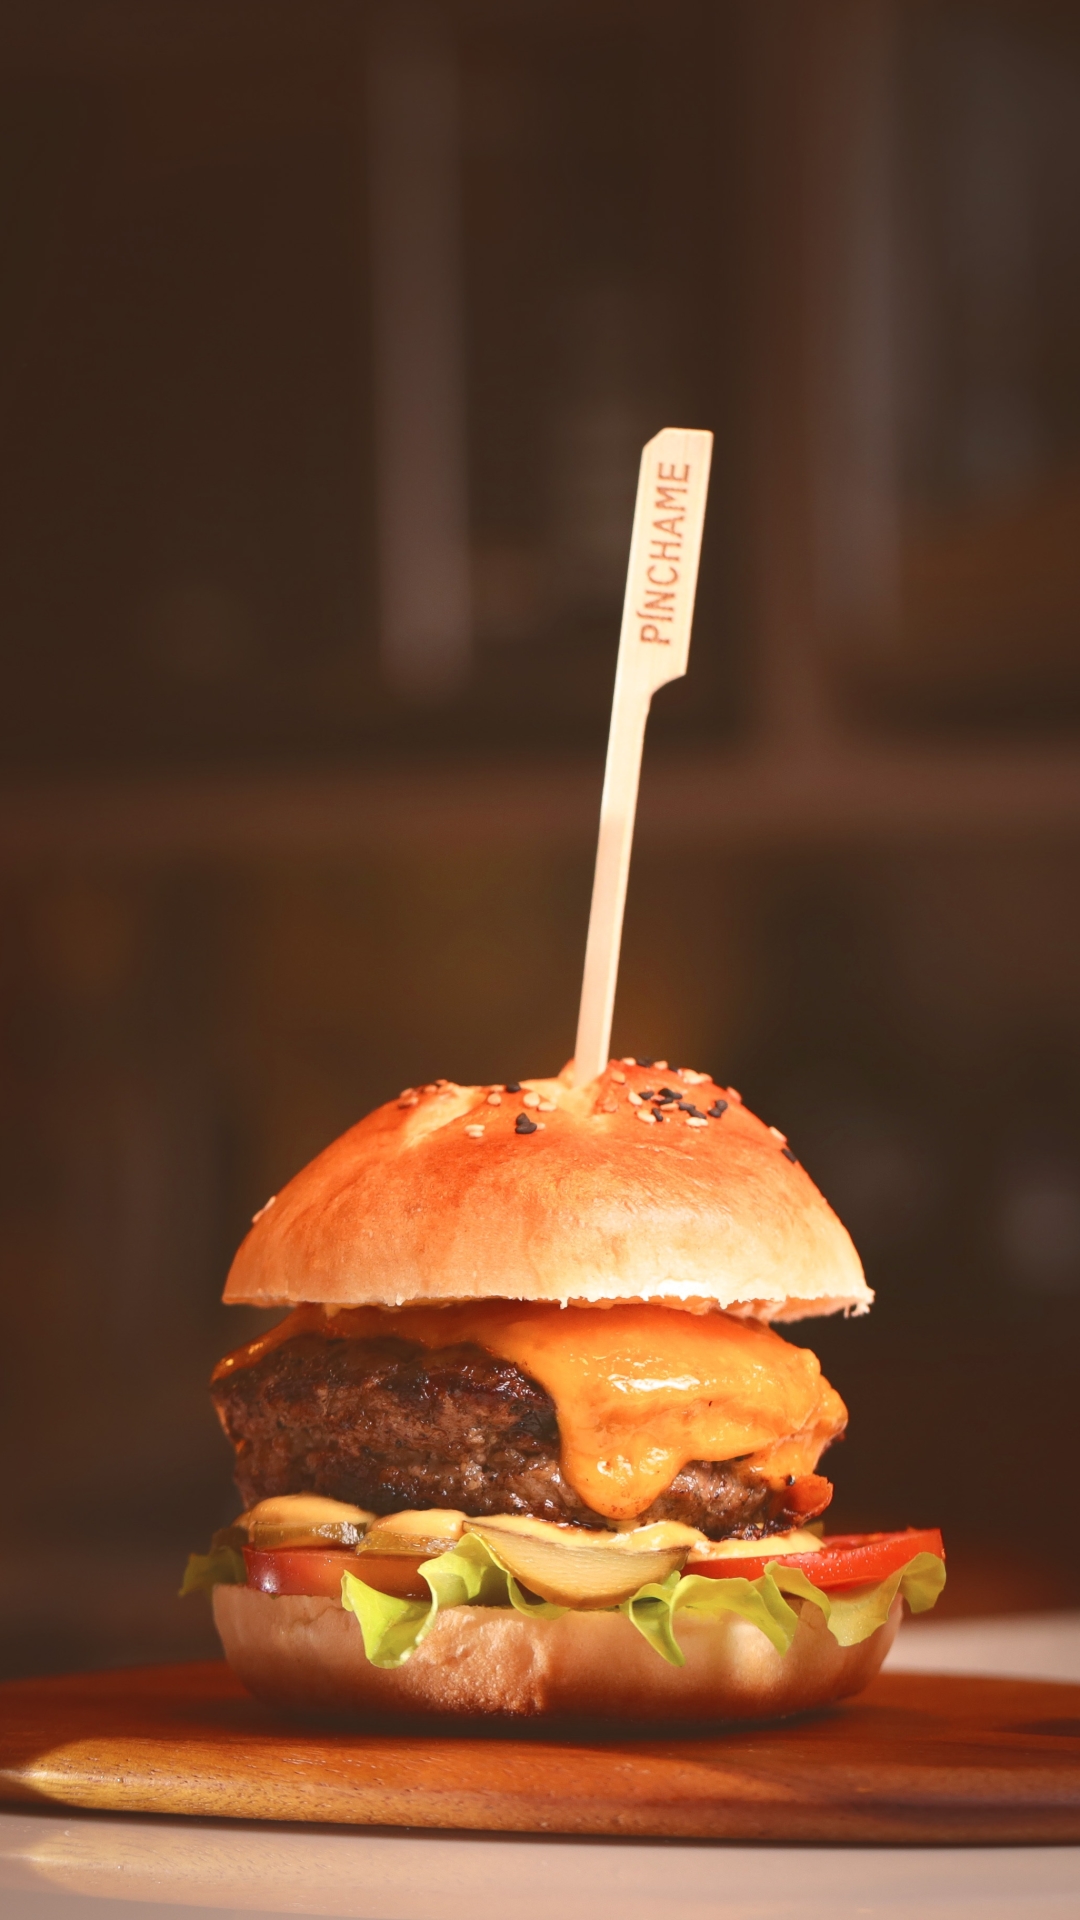 hamburger, food, burger, drink wallpaper for mobile